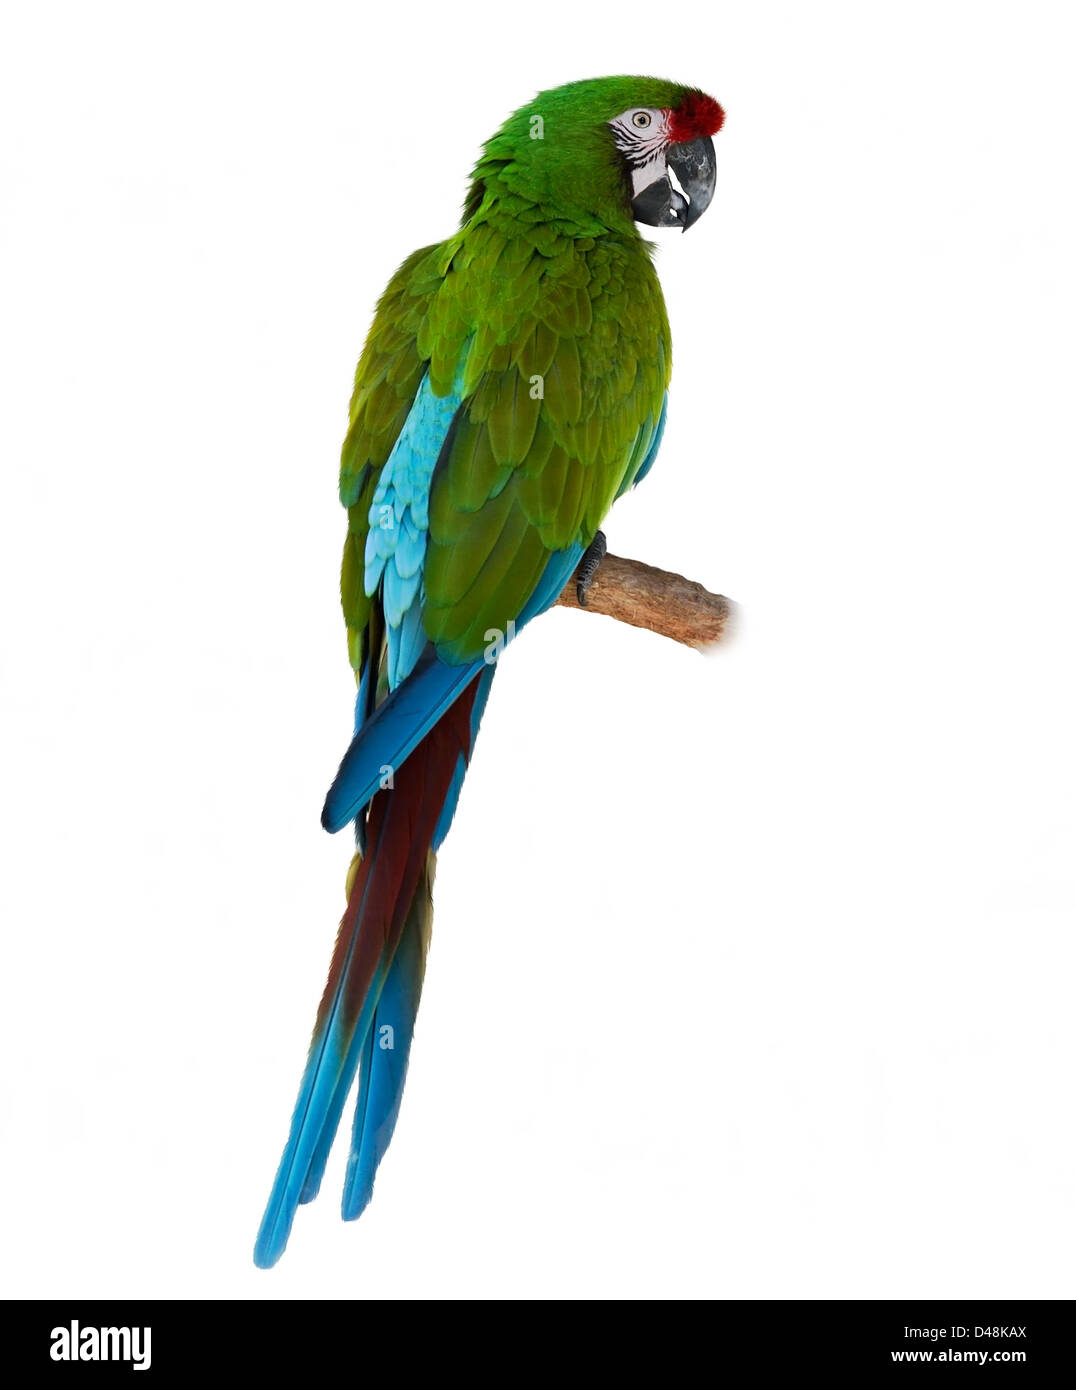 Bunte grüne Papagei Ara auf weißem Hintergrund Stockfoto